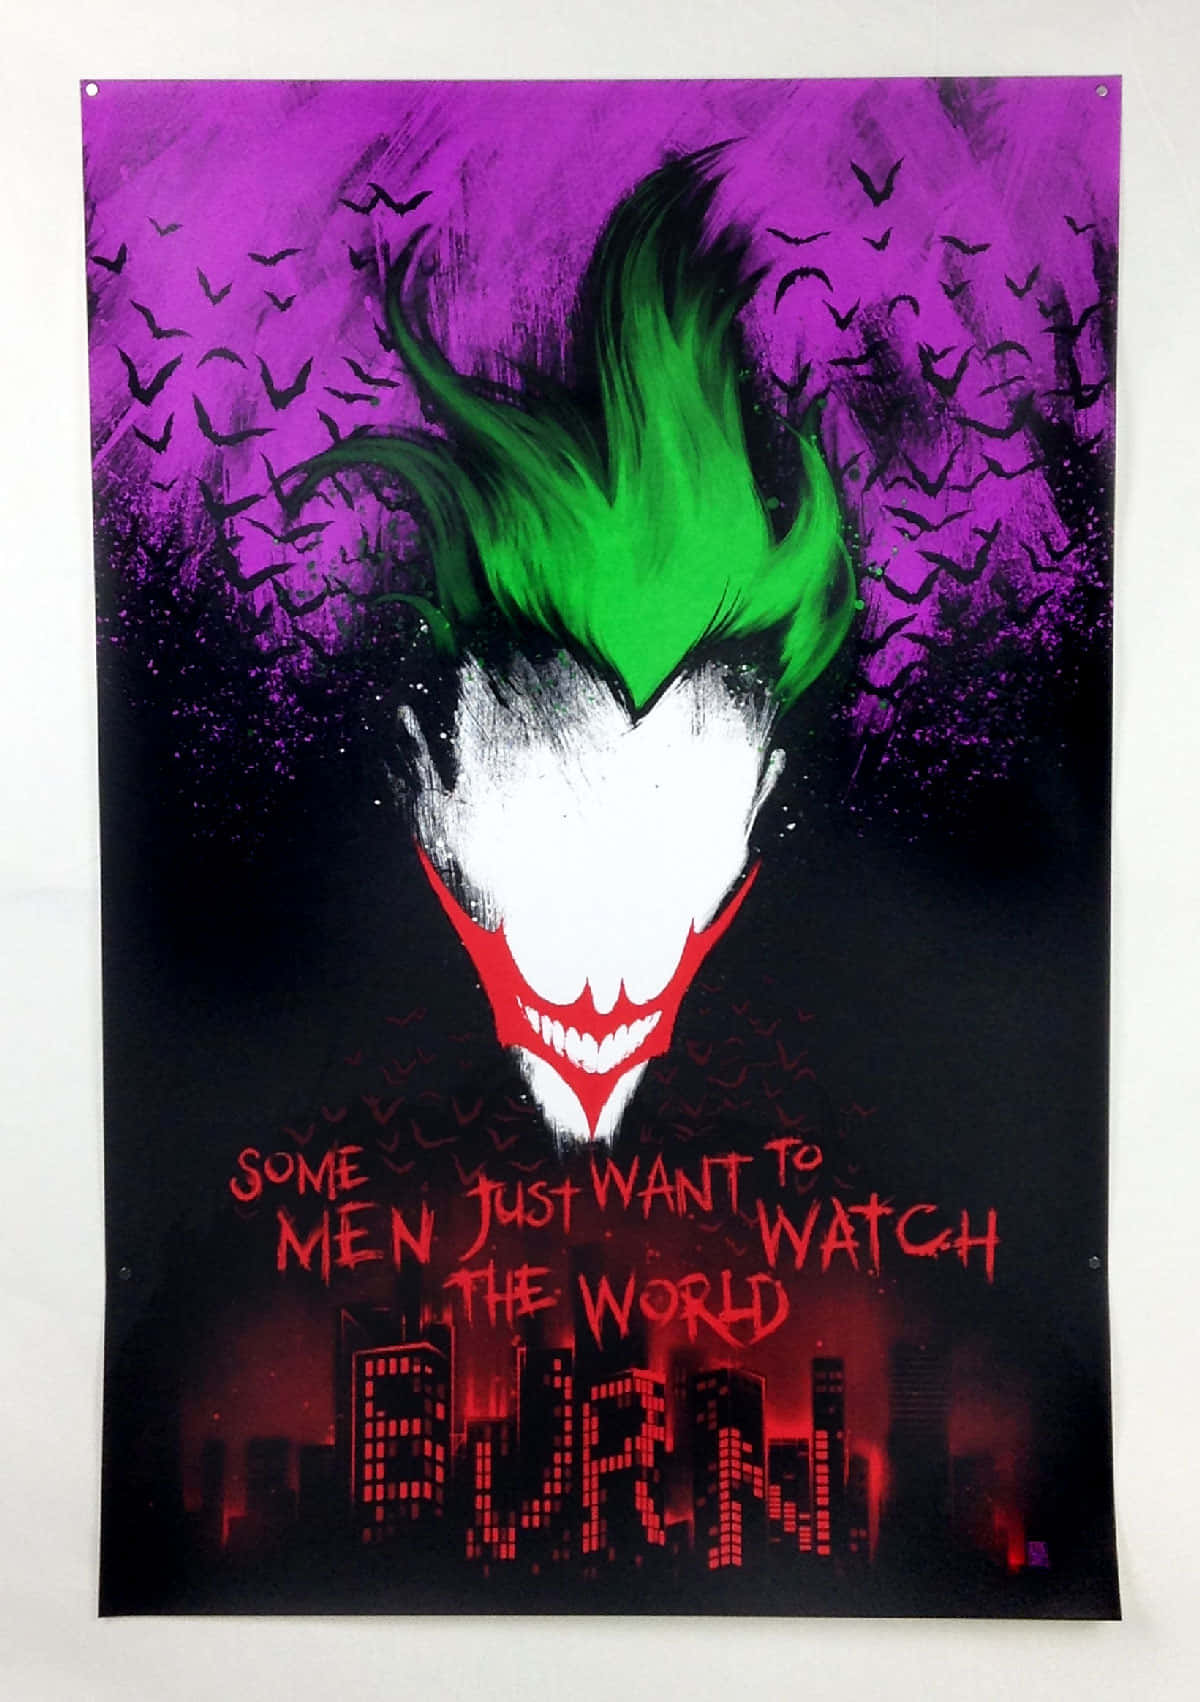 The Mysterious Dark Joker Emerges Wallpaper